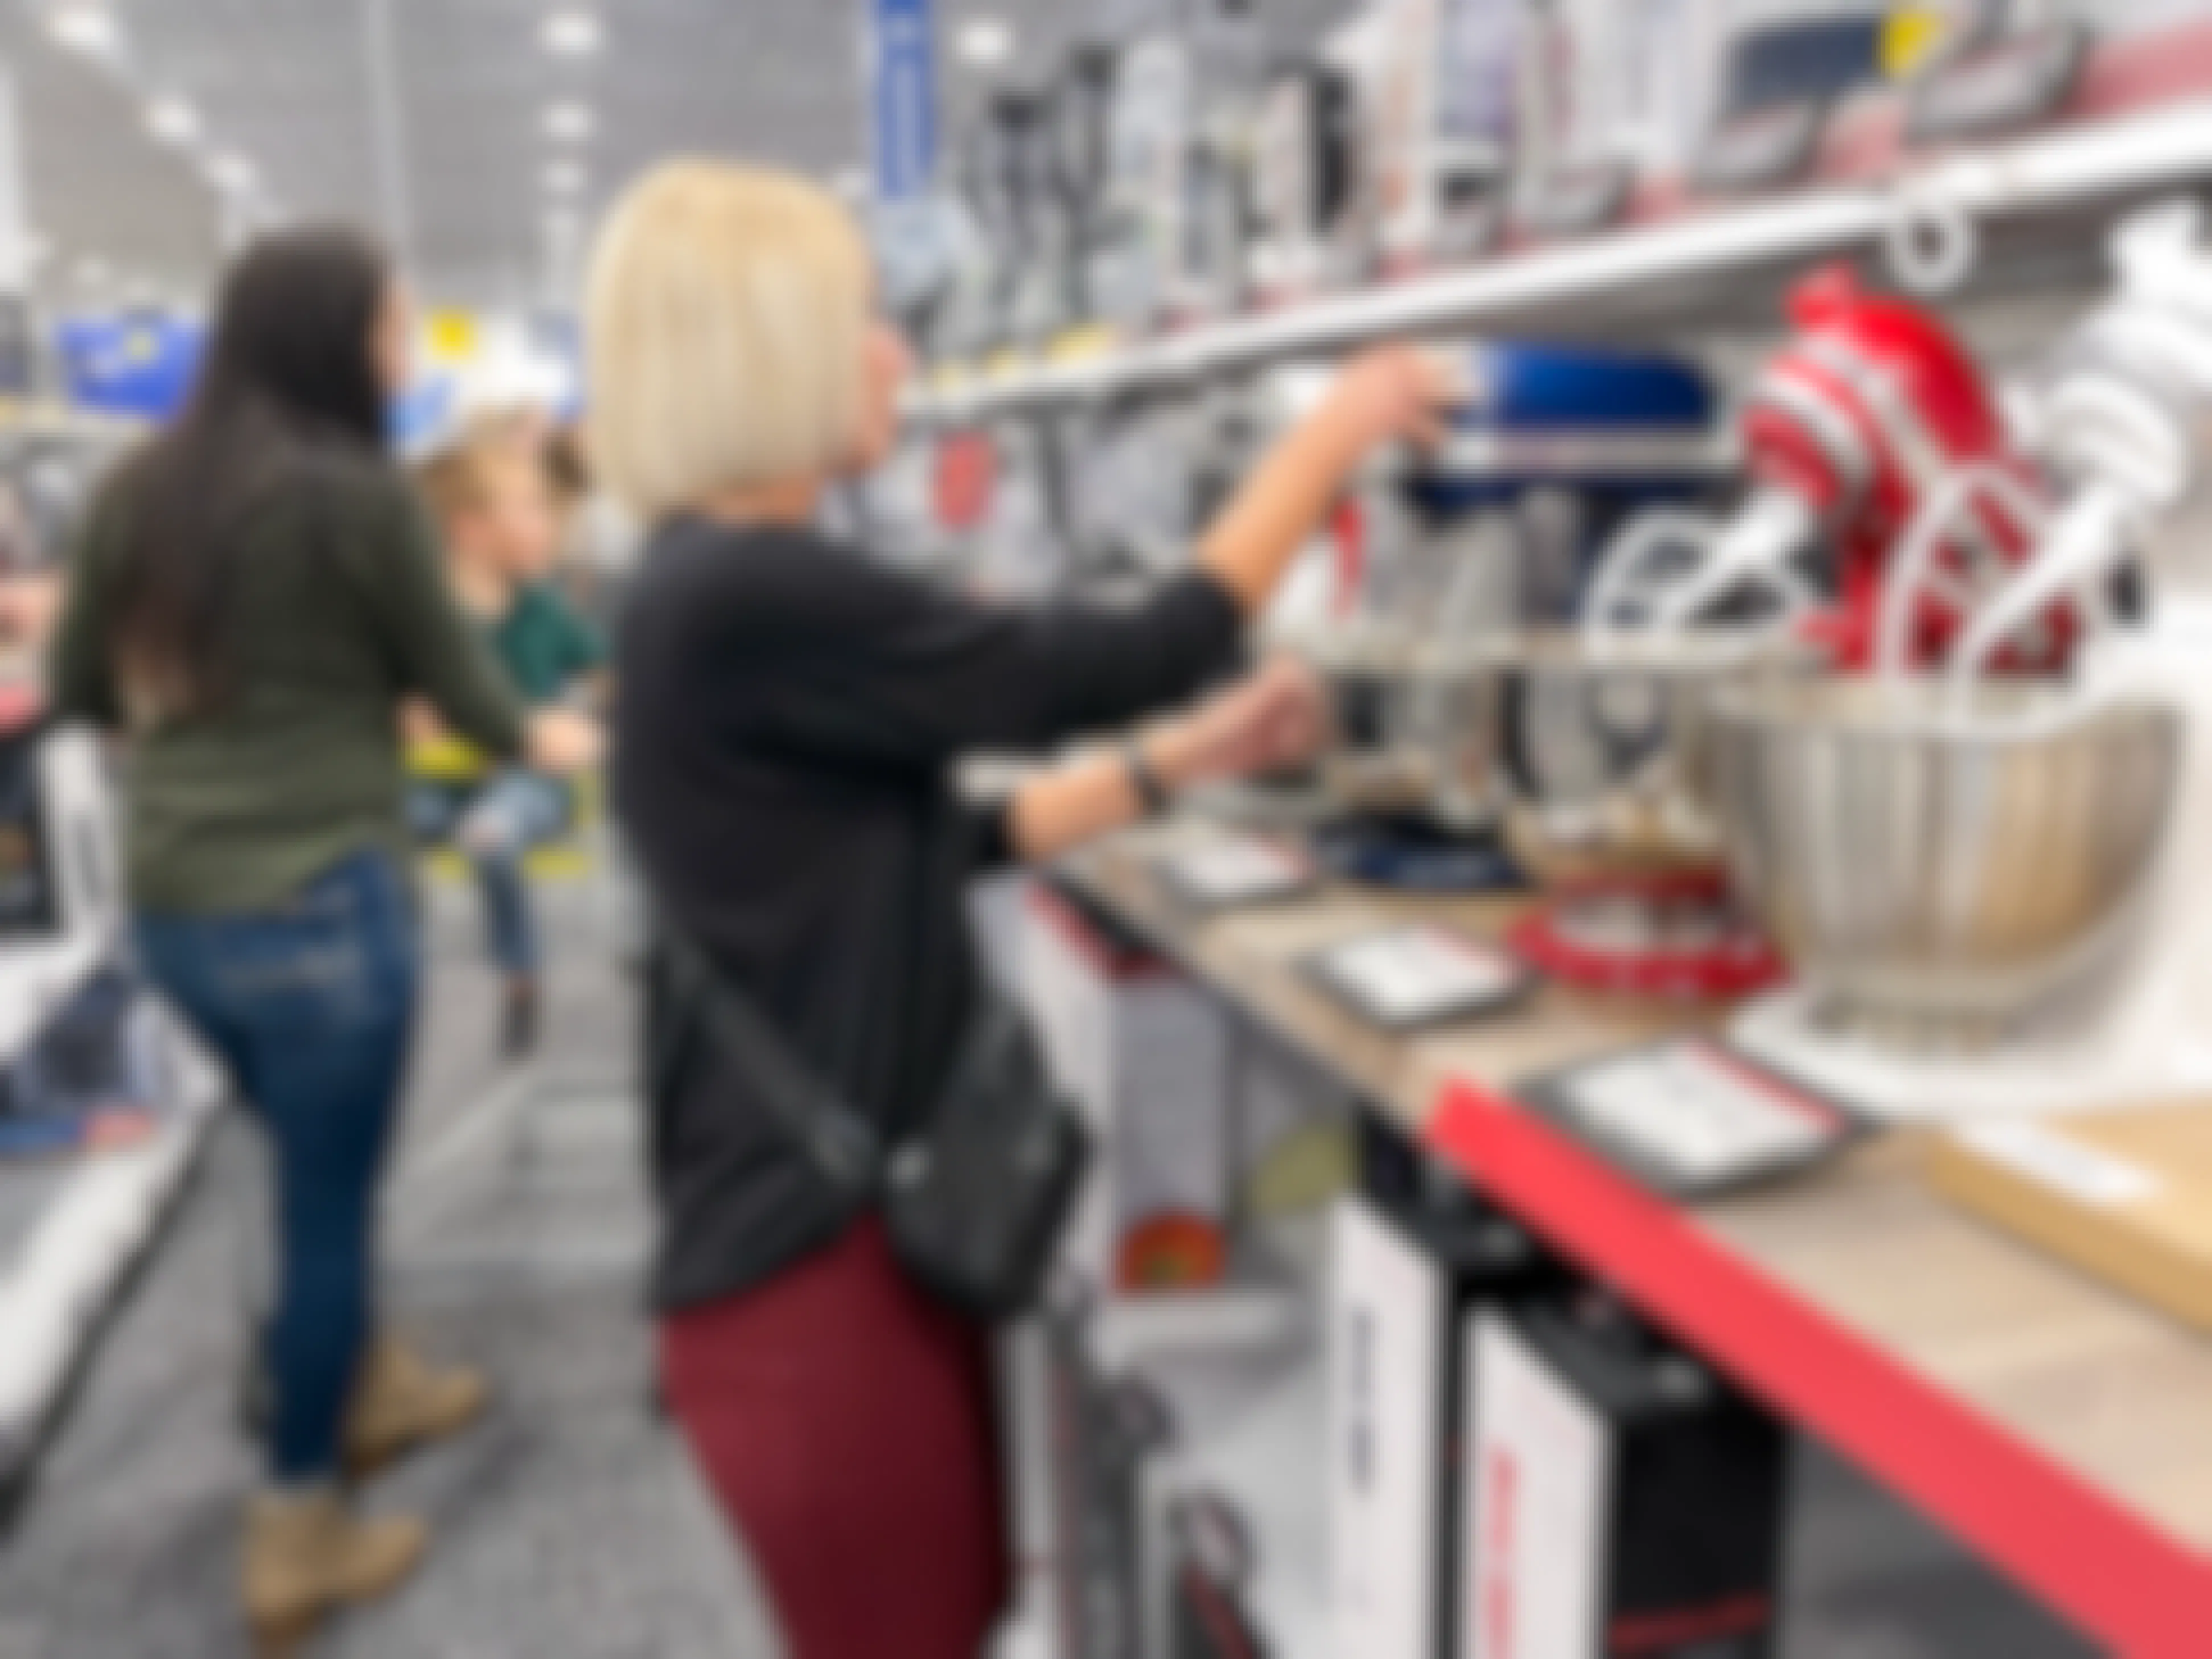 A woman looking at KitchenAid mixers at Best Buy